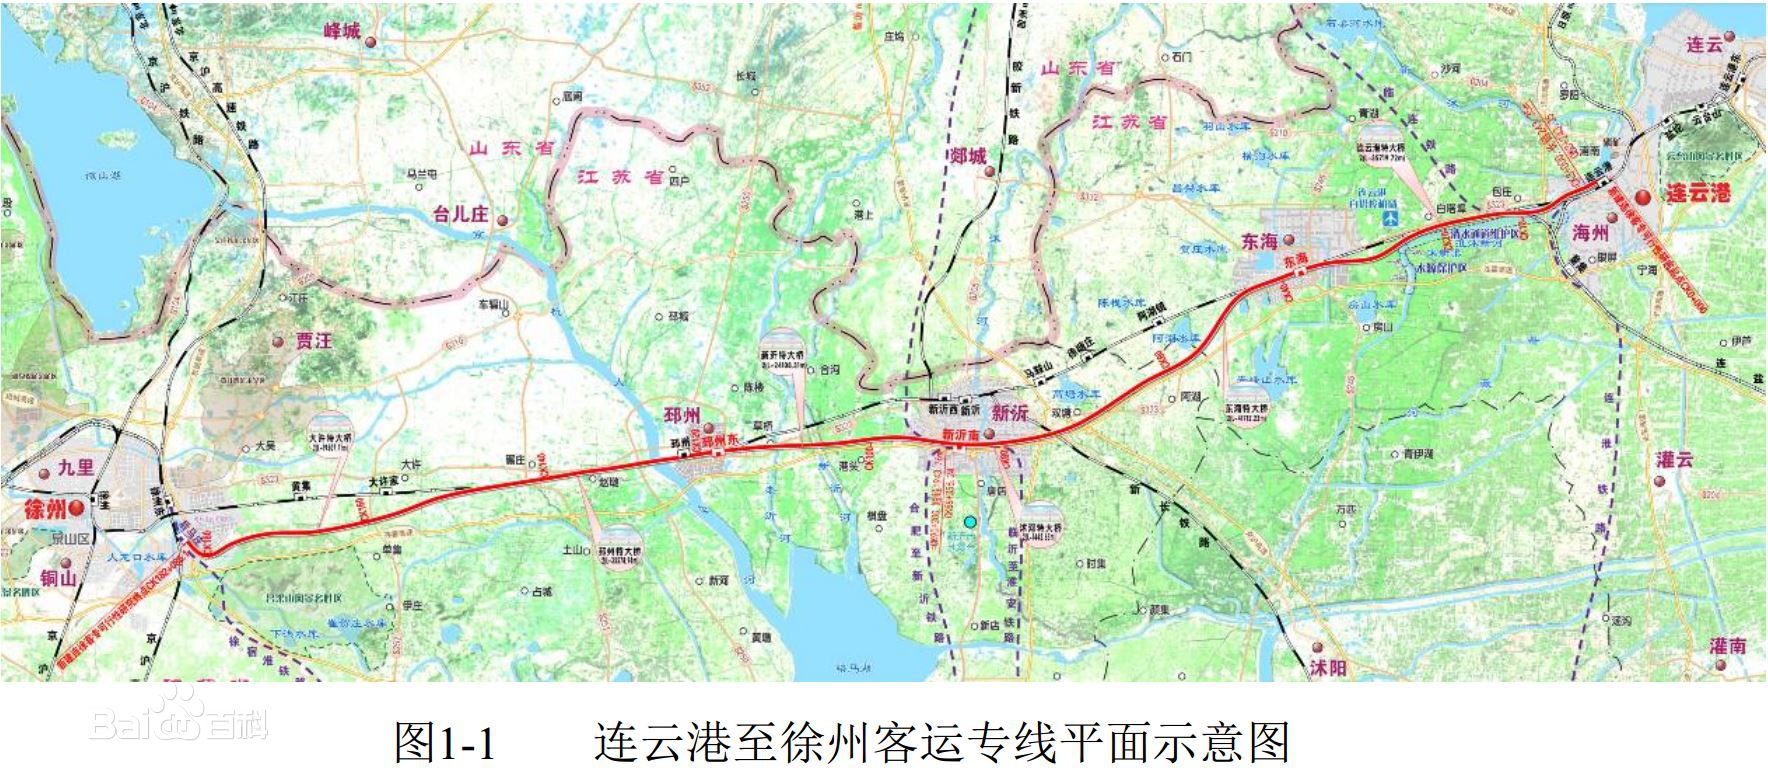 連雲港至徐州鐵路客運專線